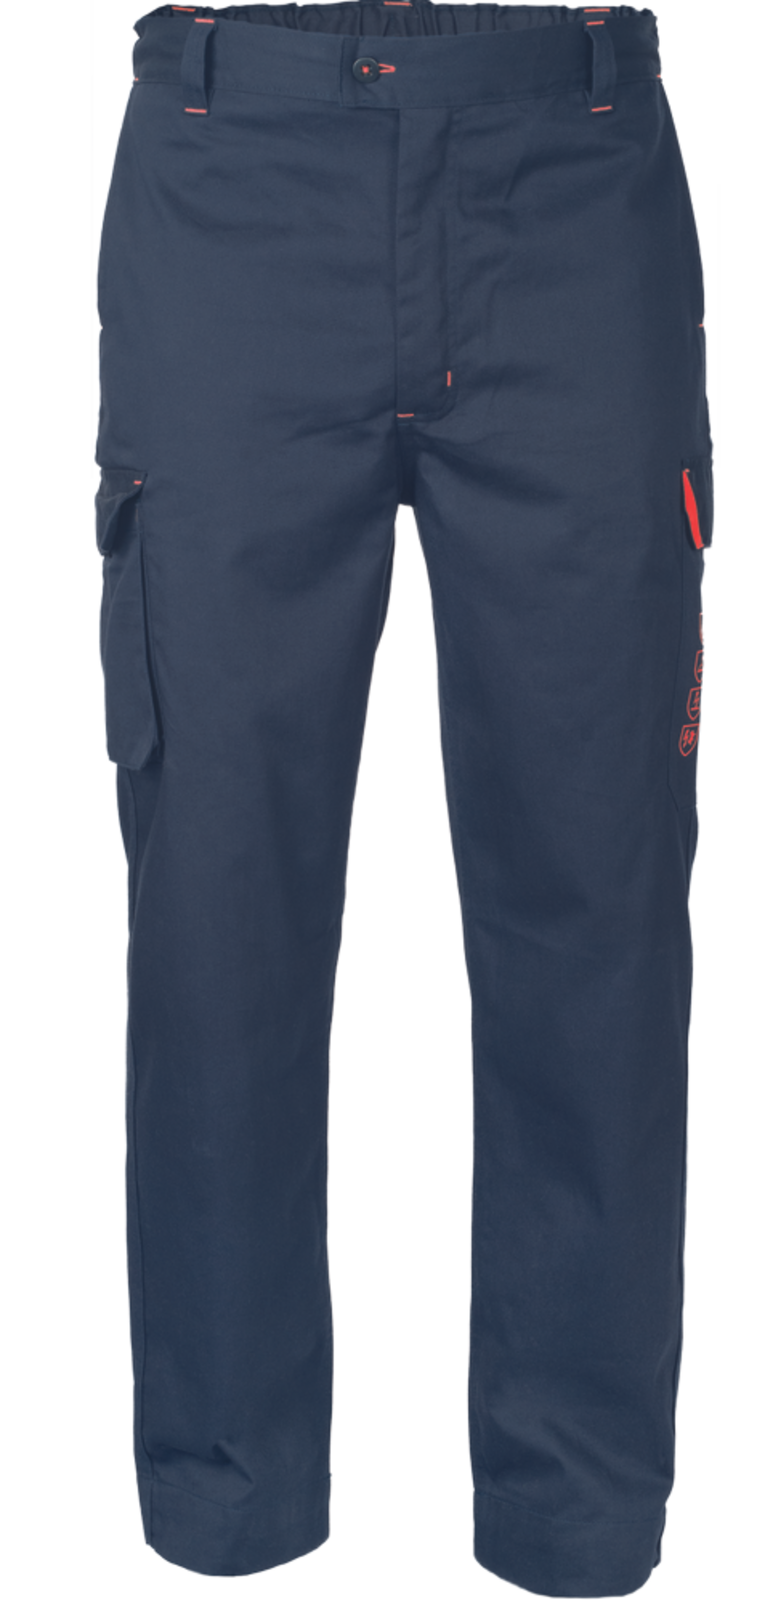 Pracovné nohavice Cerva Multinorm Hyper PM - veľkosť: 4XL, farba: navy